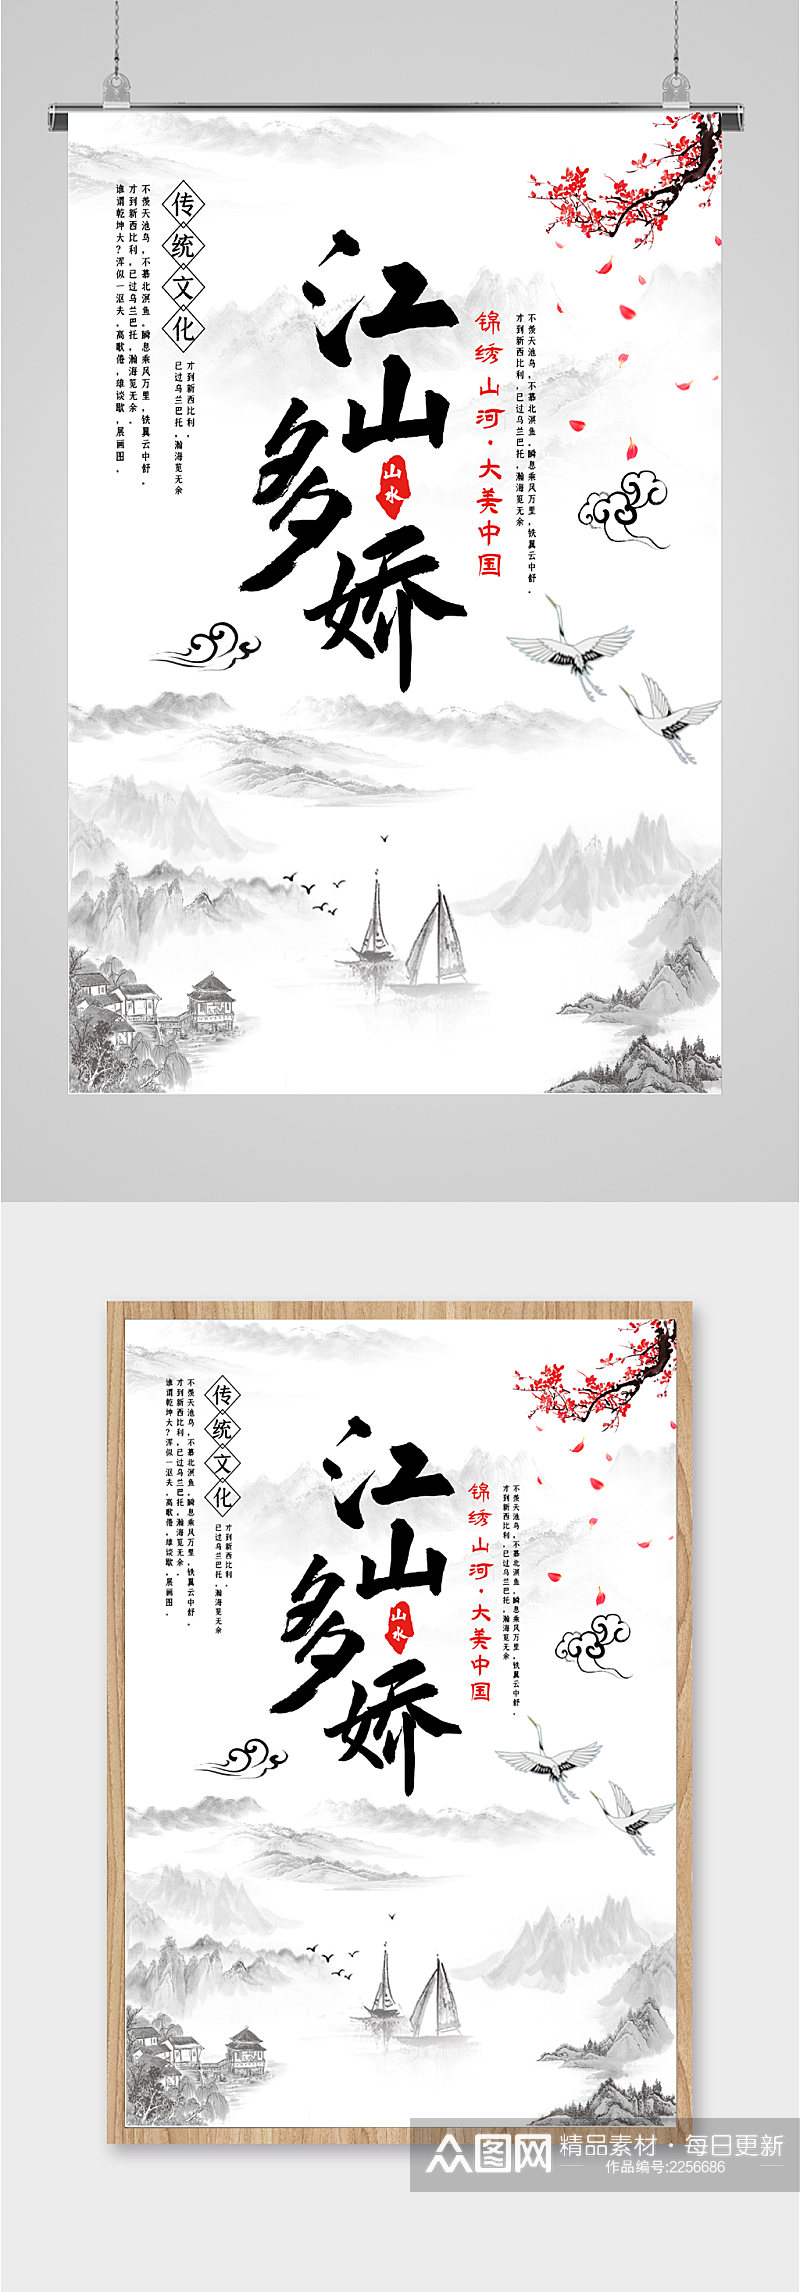 江山多娇传统文化海报素材